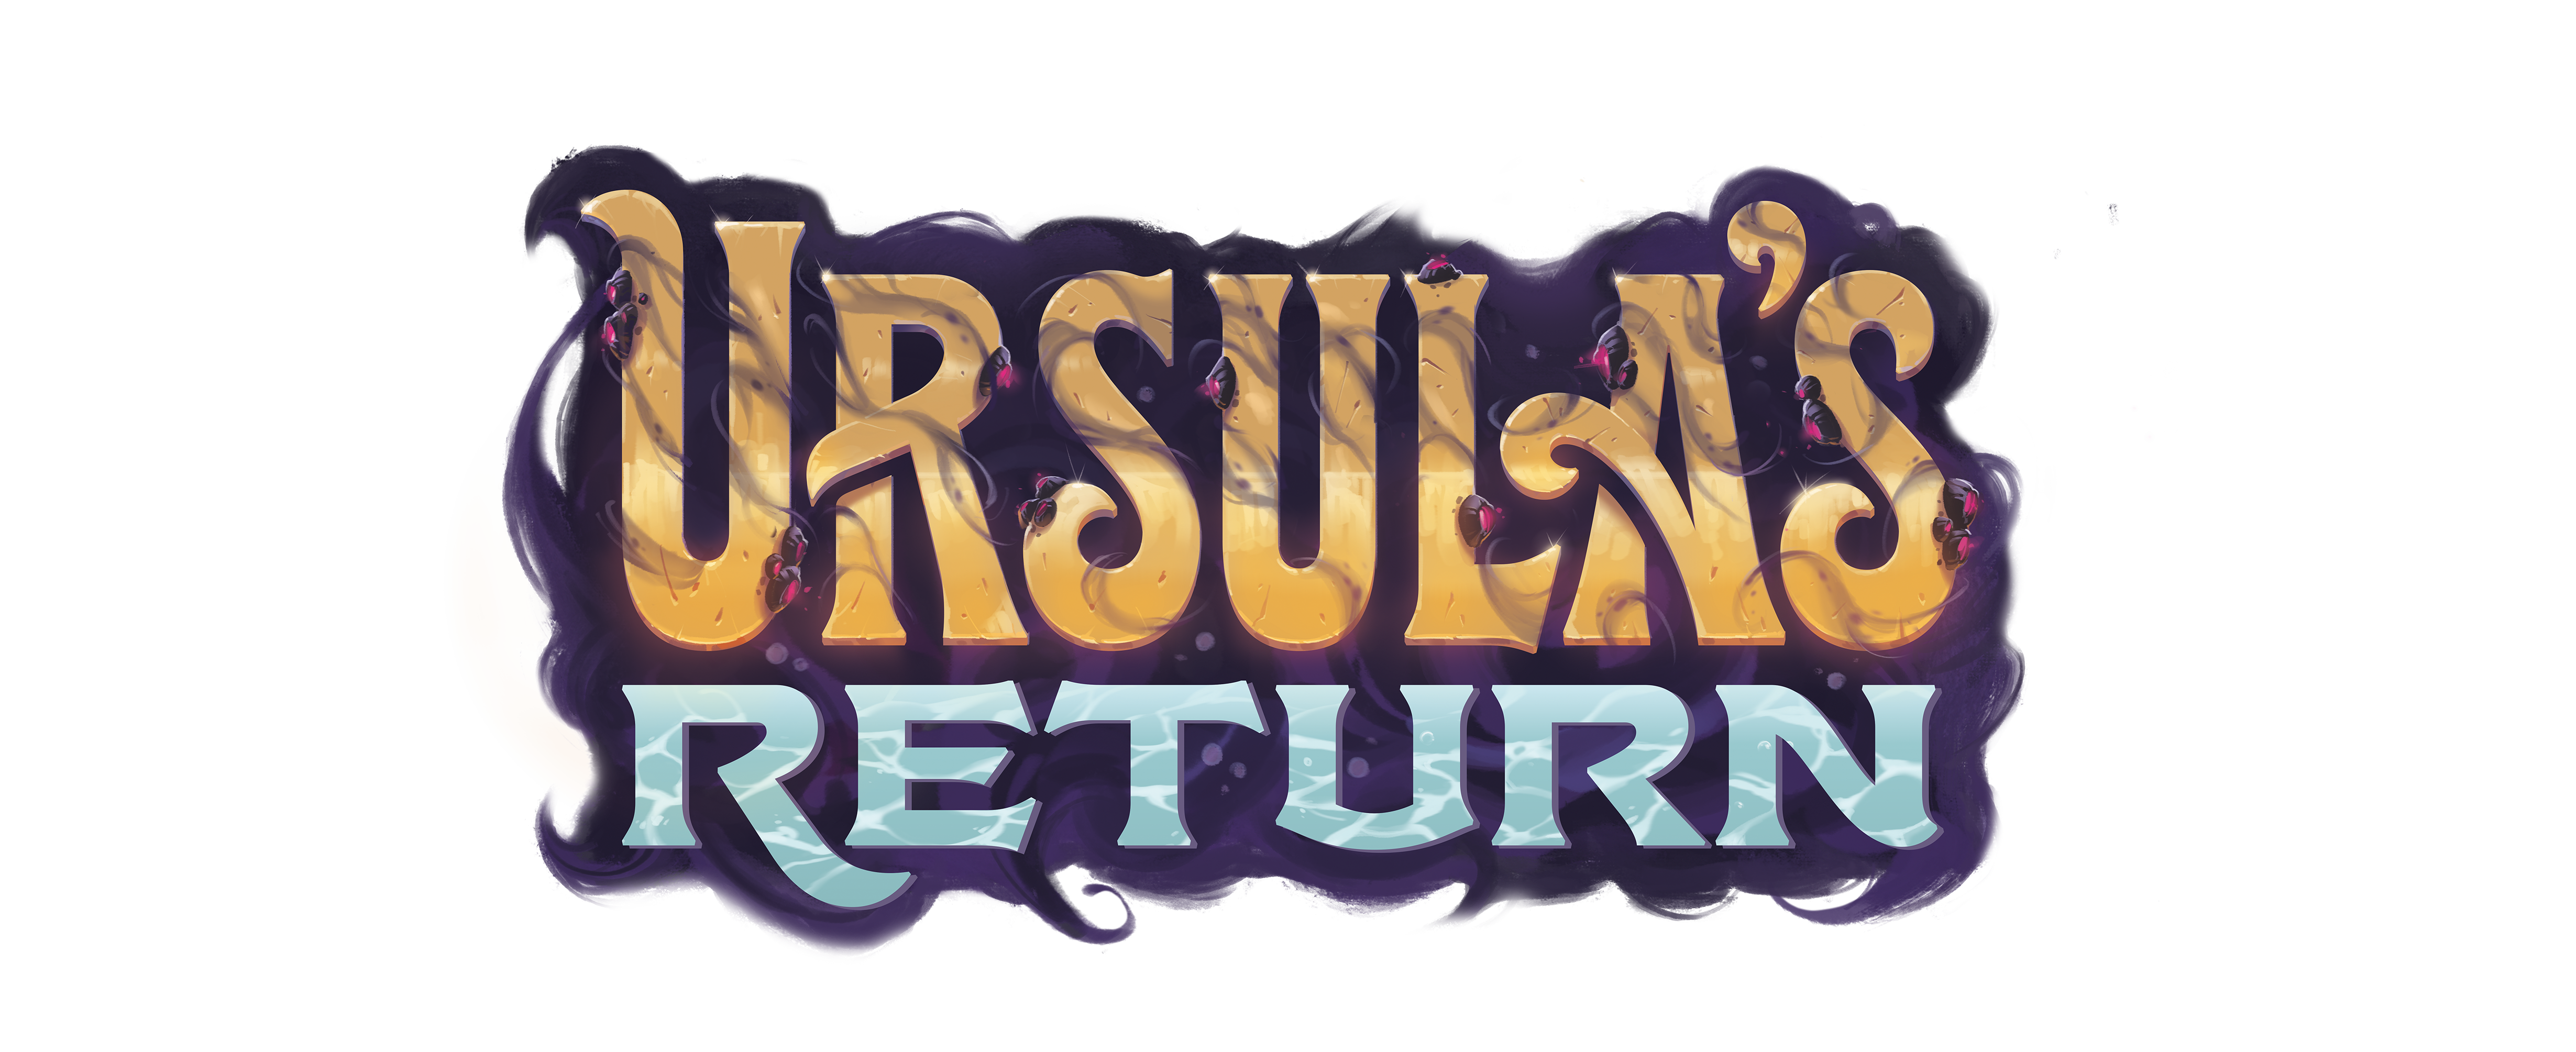 Ursula's Return